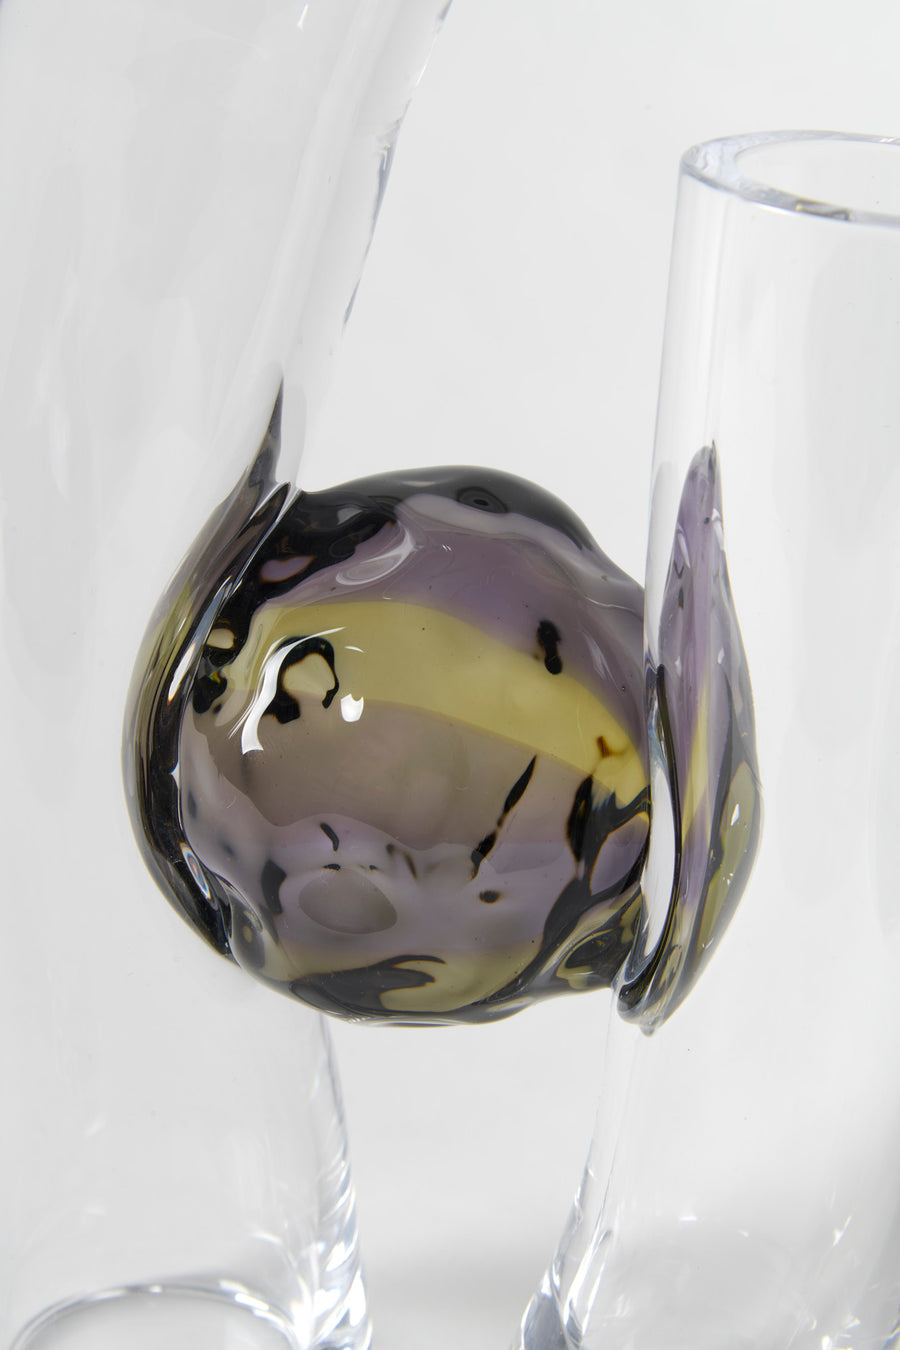 Flavie Audi artist glass blowing glass vase les vases communiquant  purple yellow series details